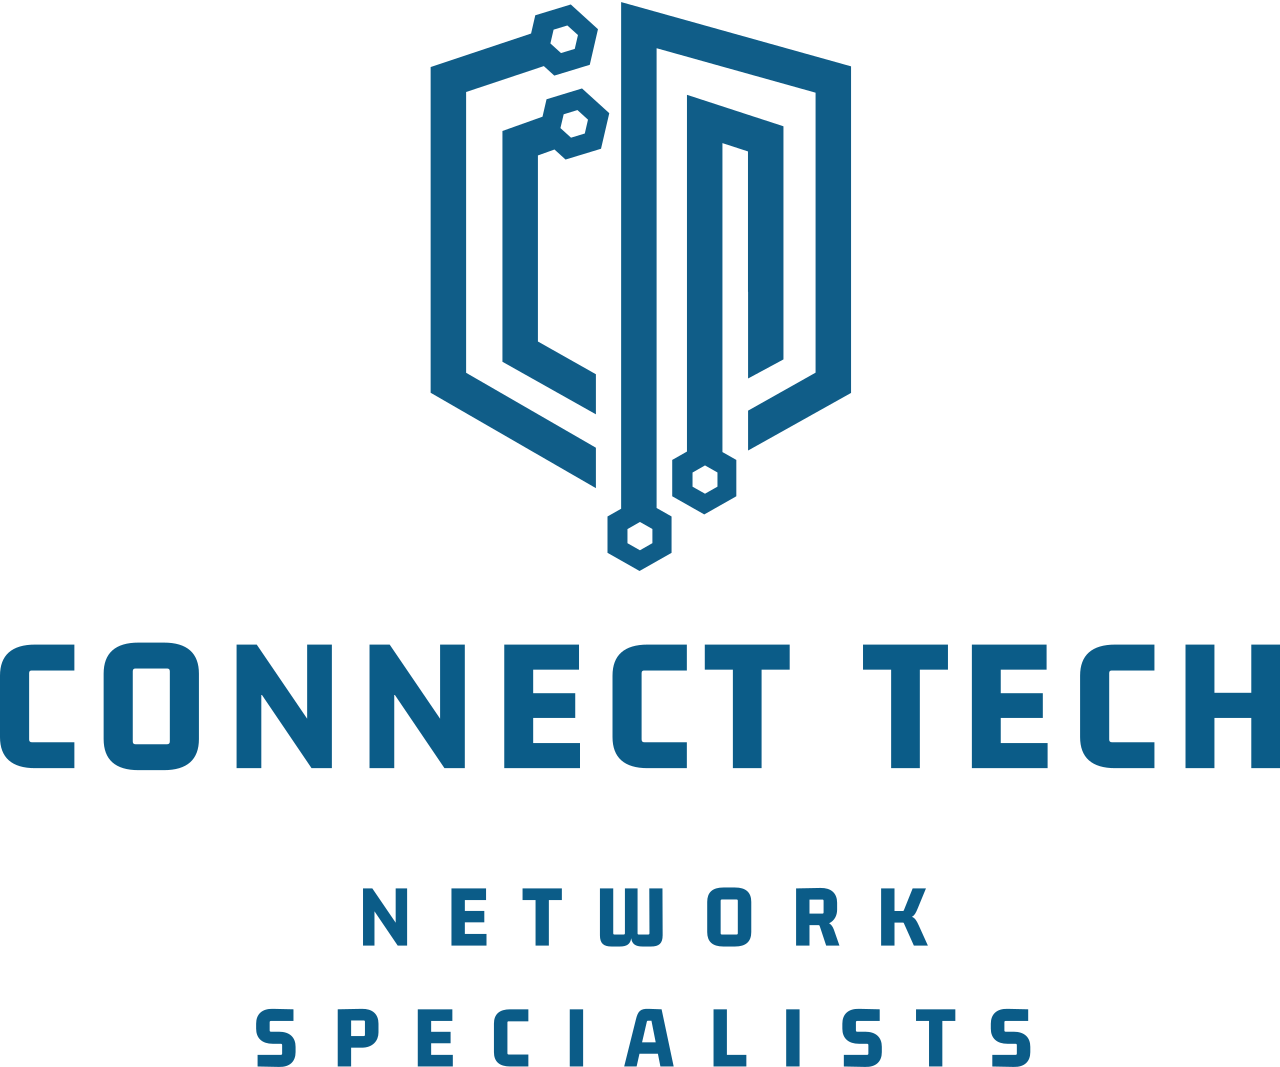 Connect Tech's logo